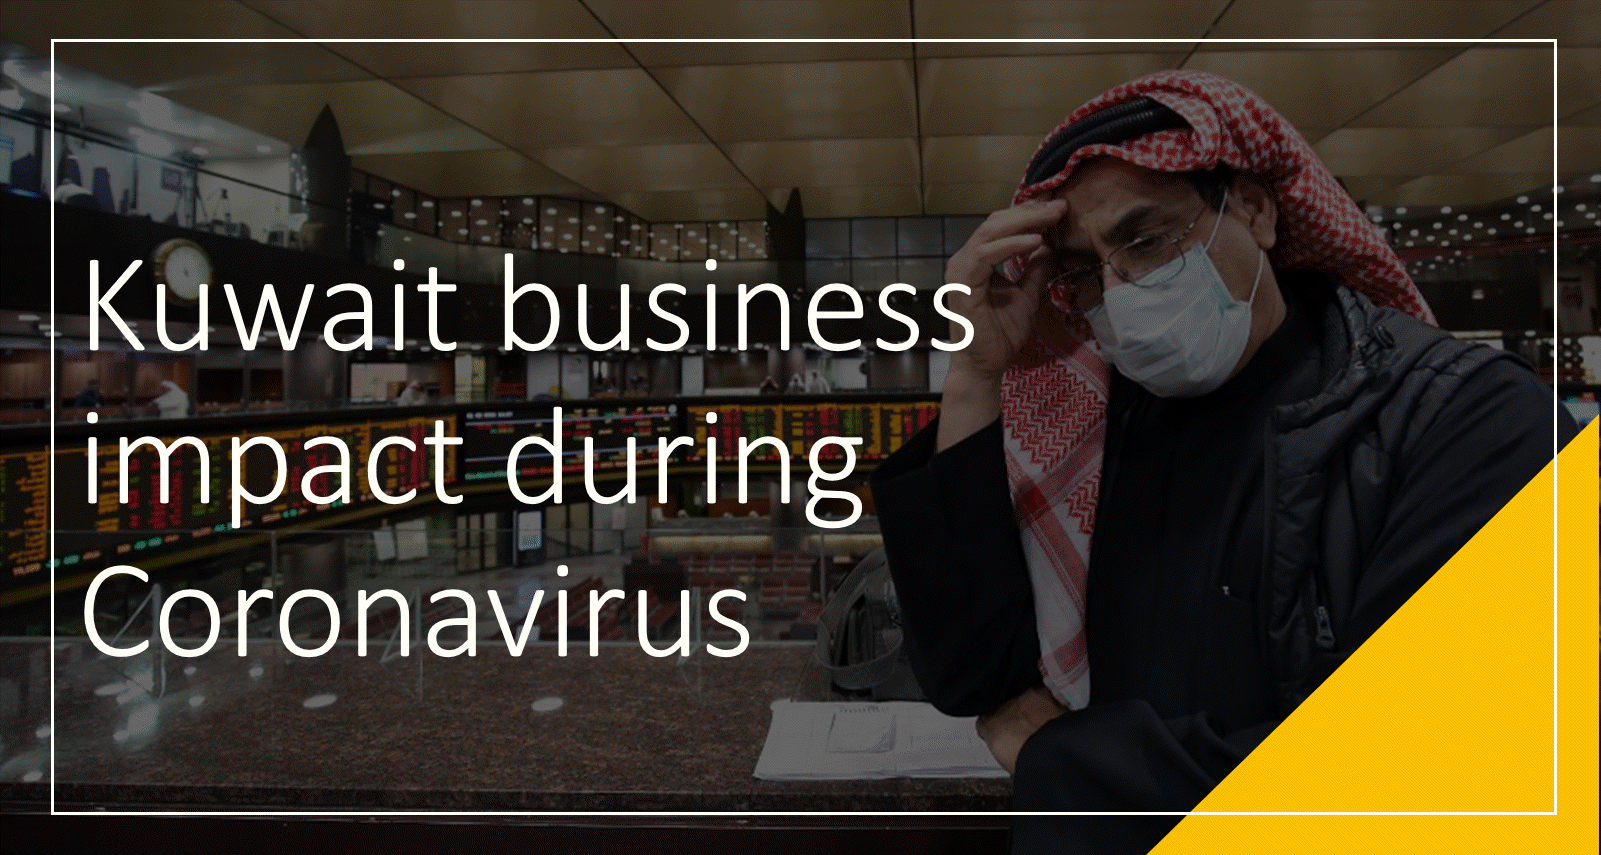 شركة Global Markets تُطلق منصة تأثير فيروس كورونا على الأعمال في الكويت